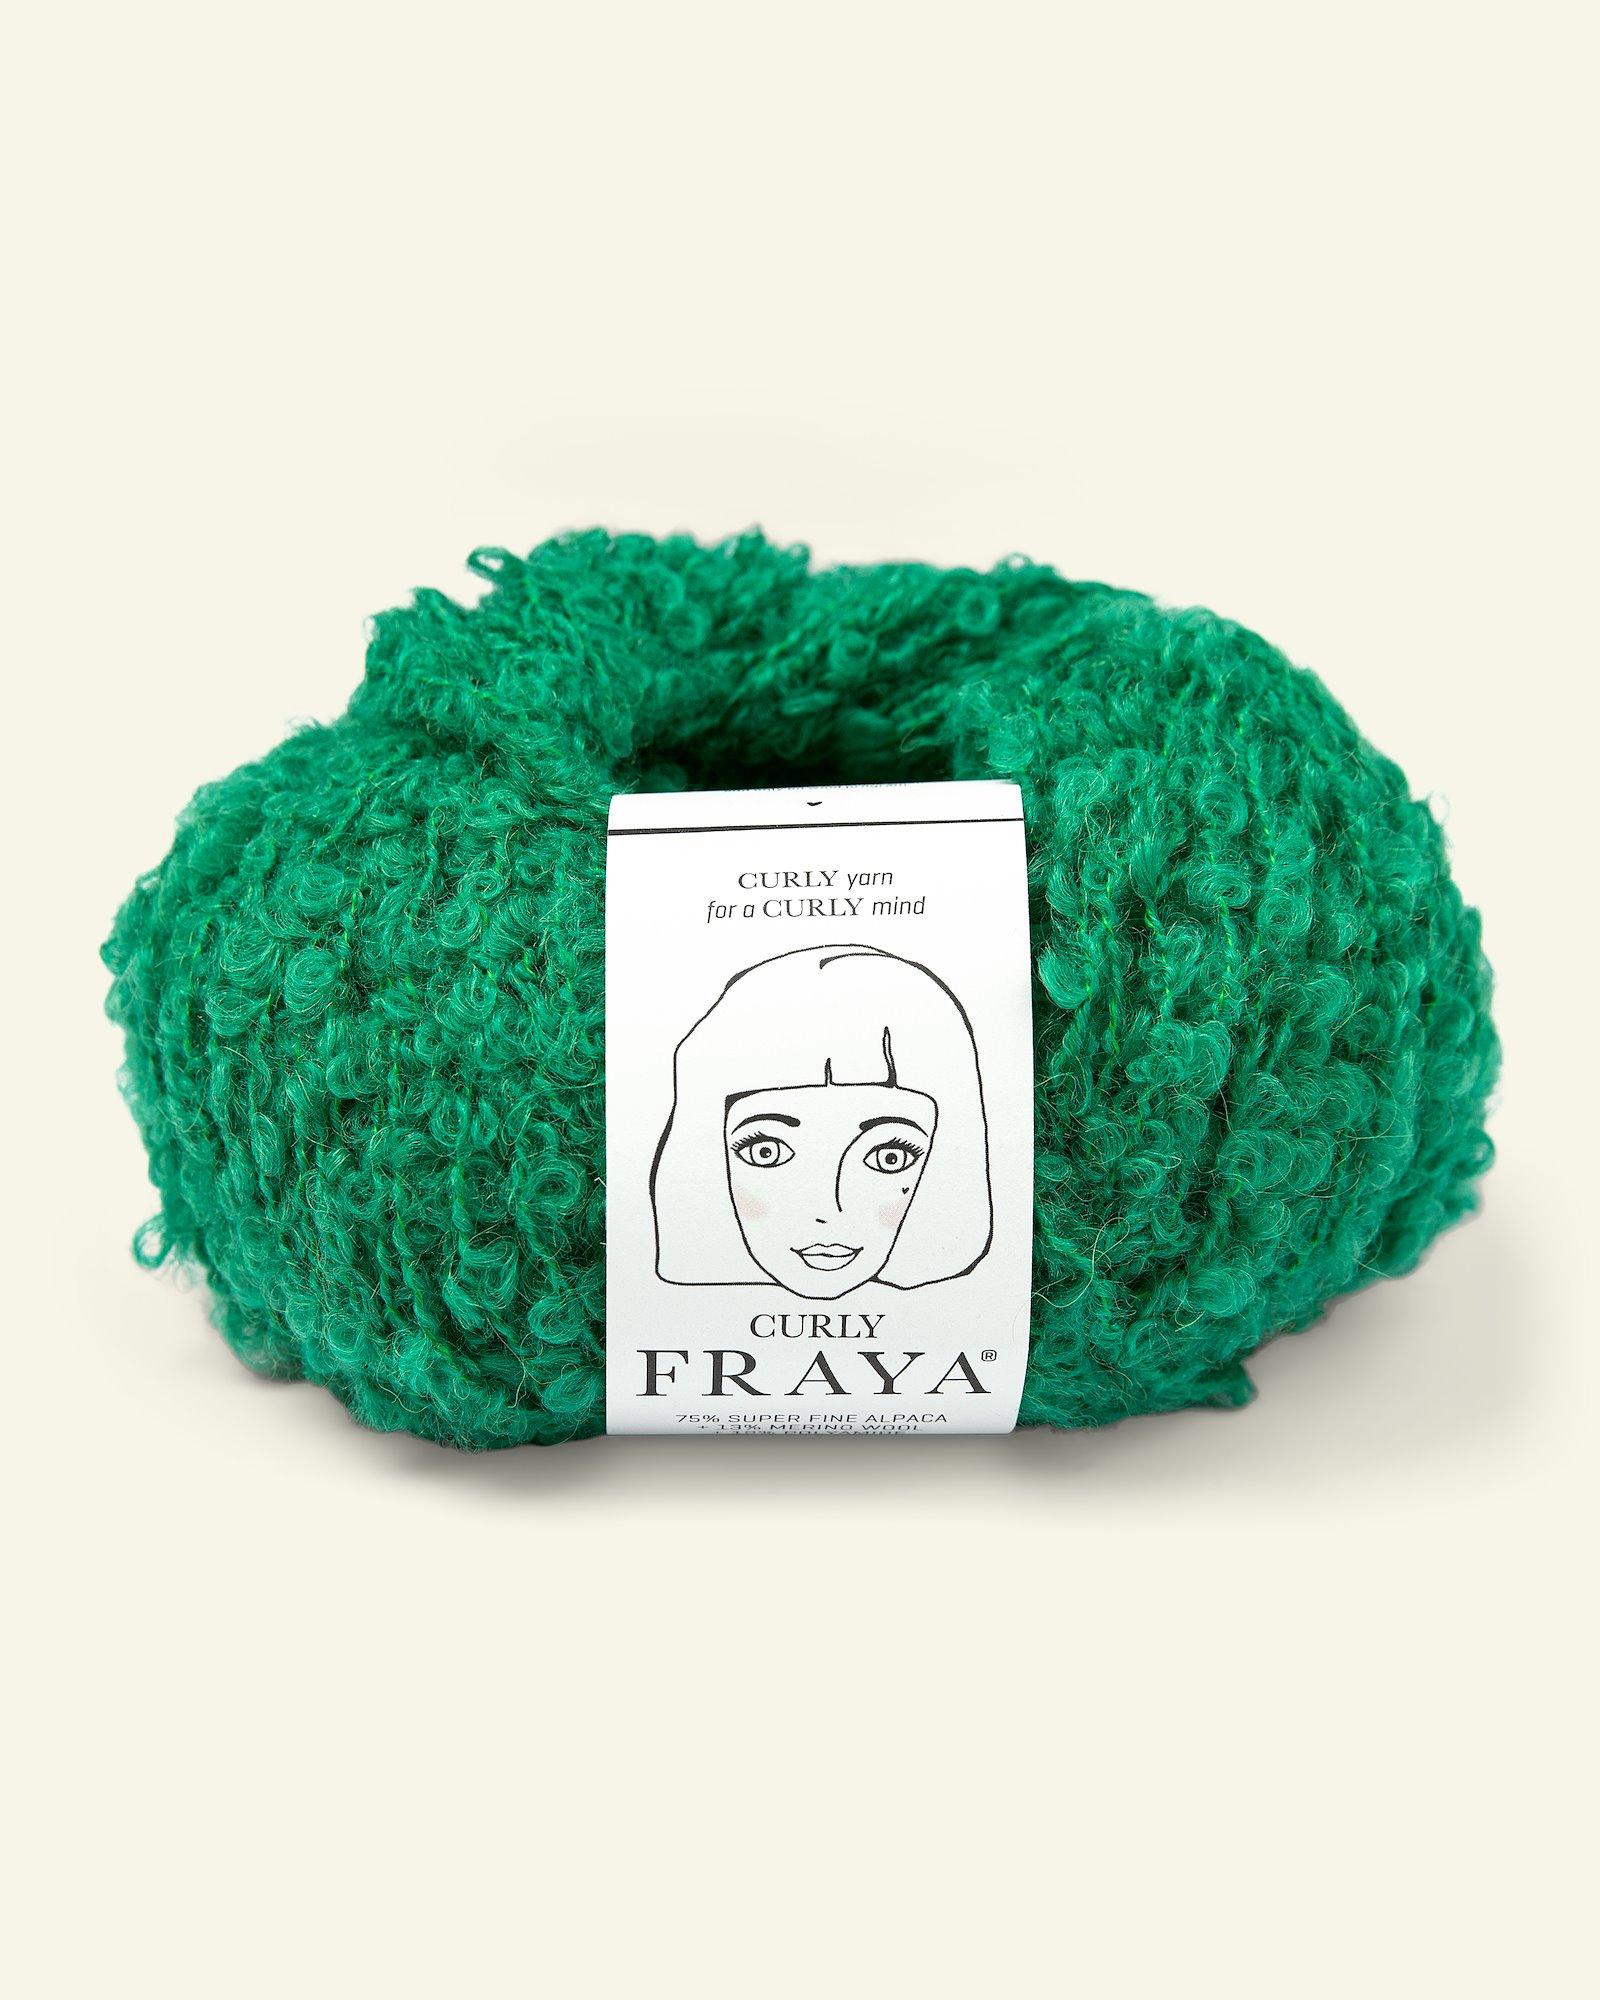 FRAYA yarn Curly bright green 90000171_pack